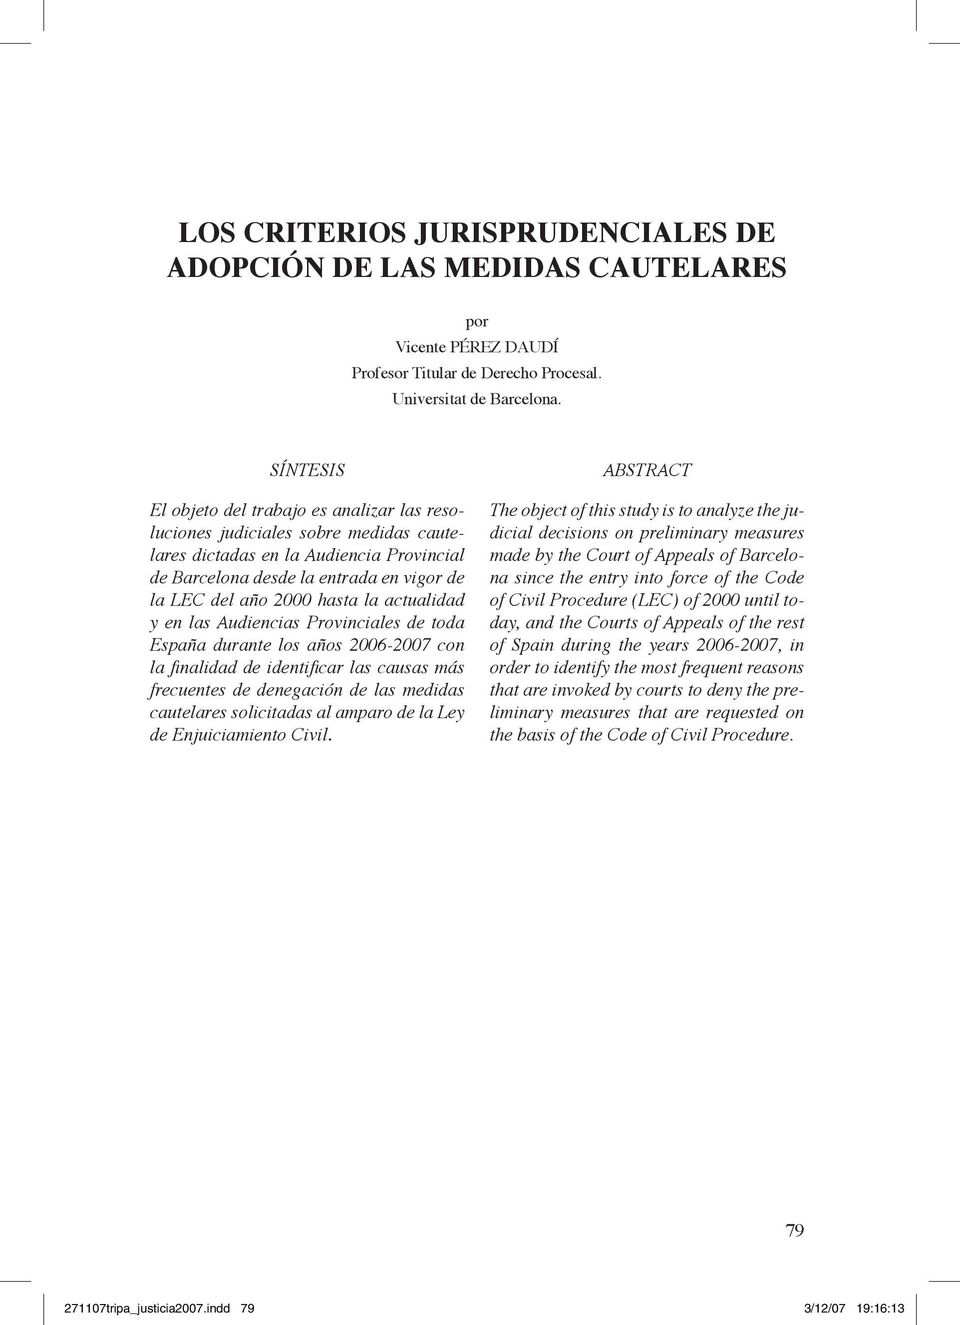 la actualidad y en las Audiencias Provinciales de toda España durante los años 2006-2007 con la finalidad de identificar las causas más frecuentes de denegación de las medidas cautelares solicitadas